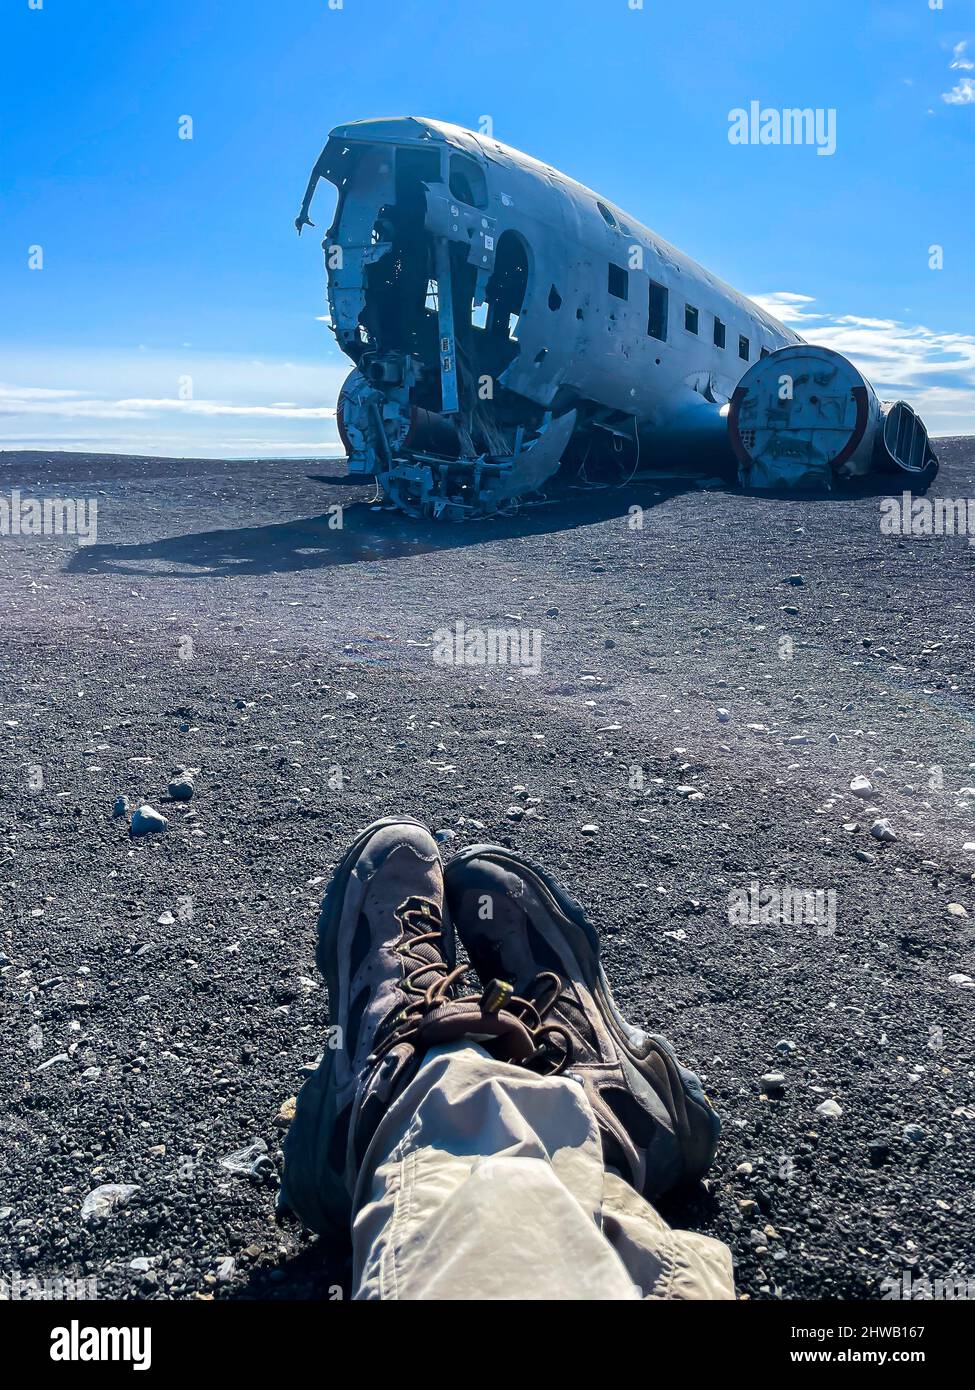 Vue impressionnante de l'épave de l'avion de Sólheimasandur, les restes d'un avion de 1973 U.S. Navy DC qui s'est écrasé sur la plage de sable noir en Islande Banque D'Images